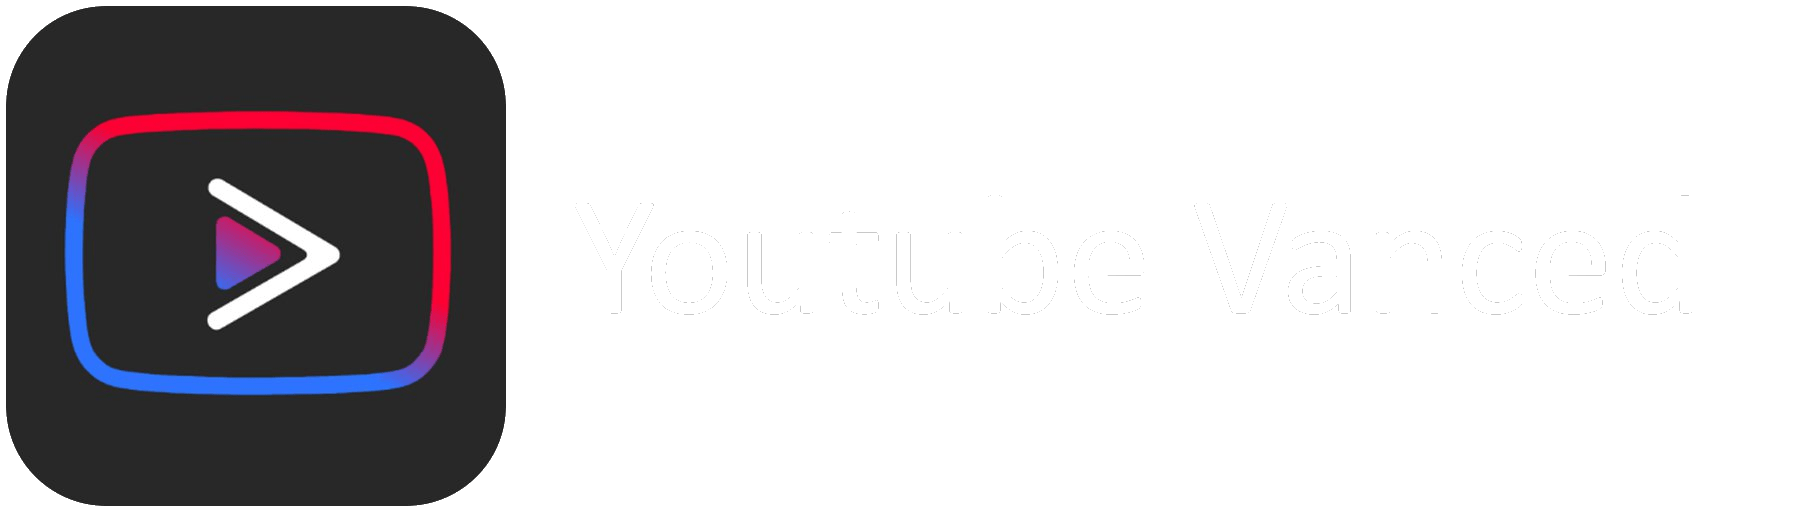 youtube vanced down